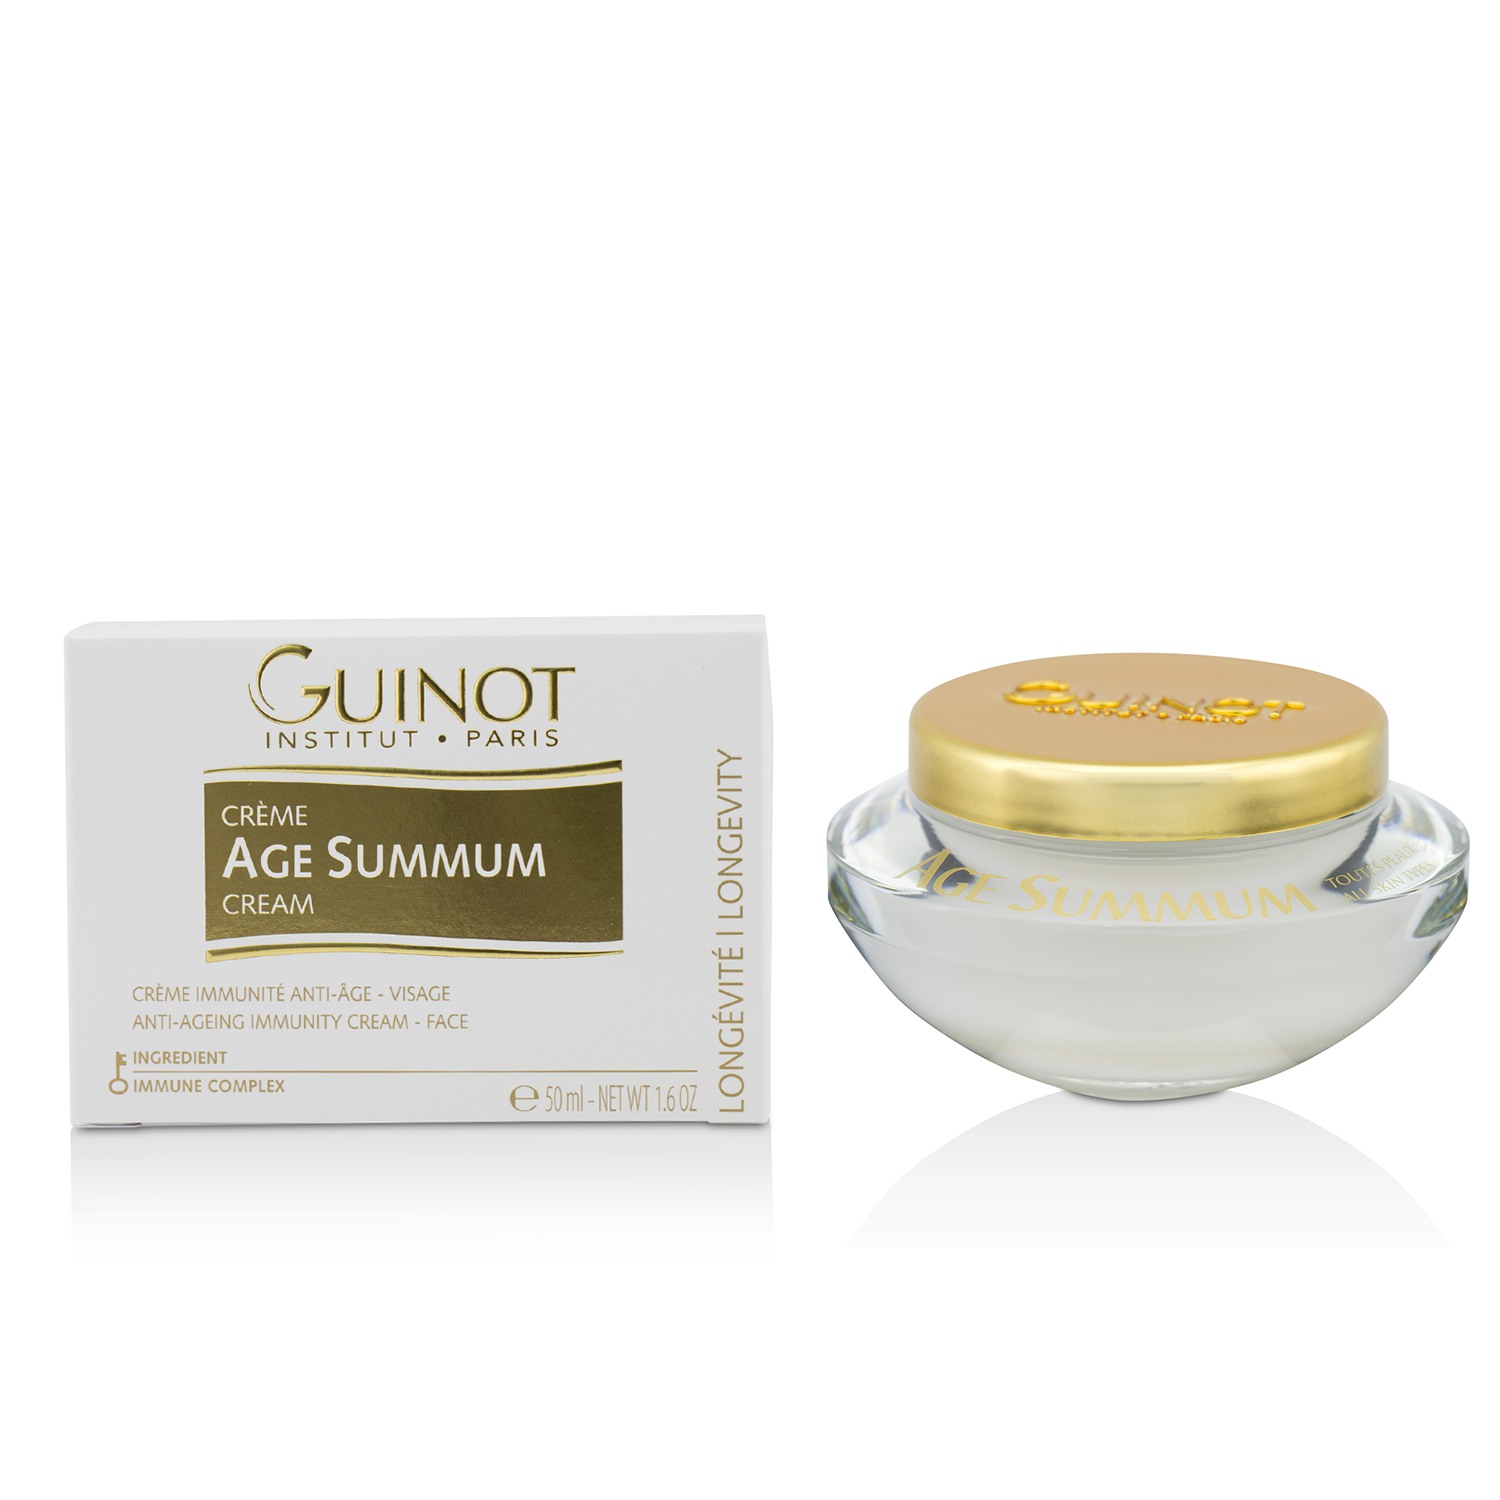 Creme Age Summum Anti-Ageing Immunity Cream For Face Guinot Image